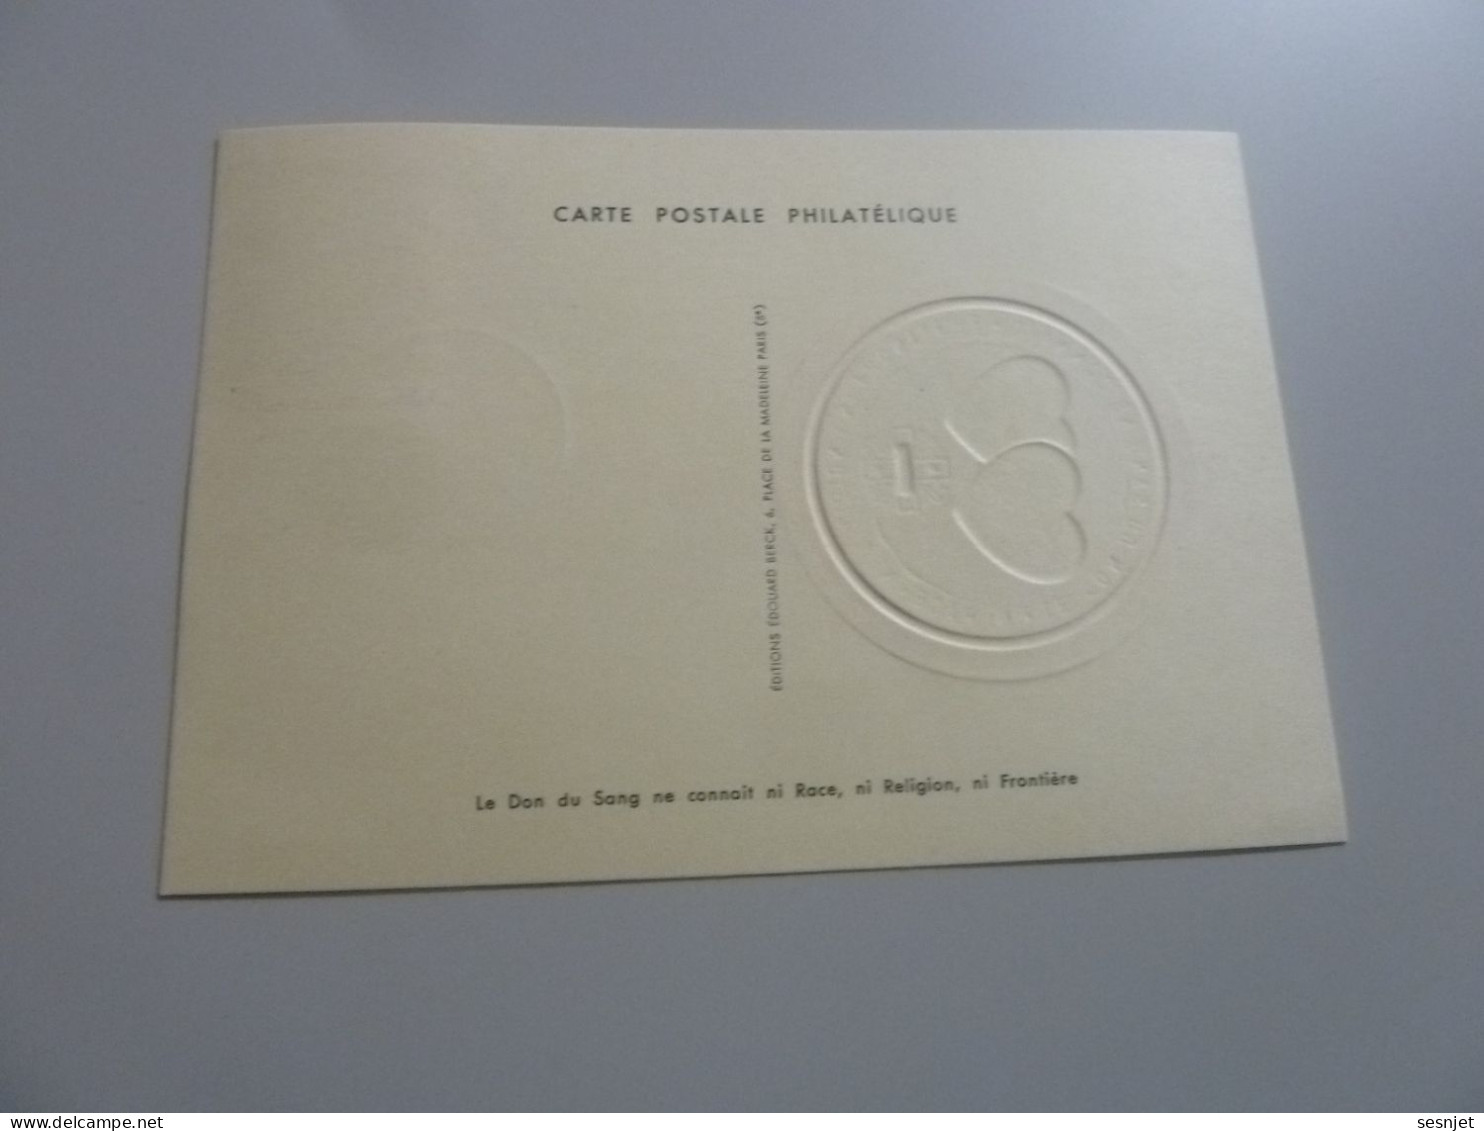 Les Donneurs Du Sang - Premier Jour D'Emission - Yt 1220 - Editions Edouard Berck - Année 1959 - - Used Stamps